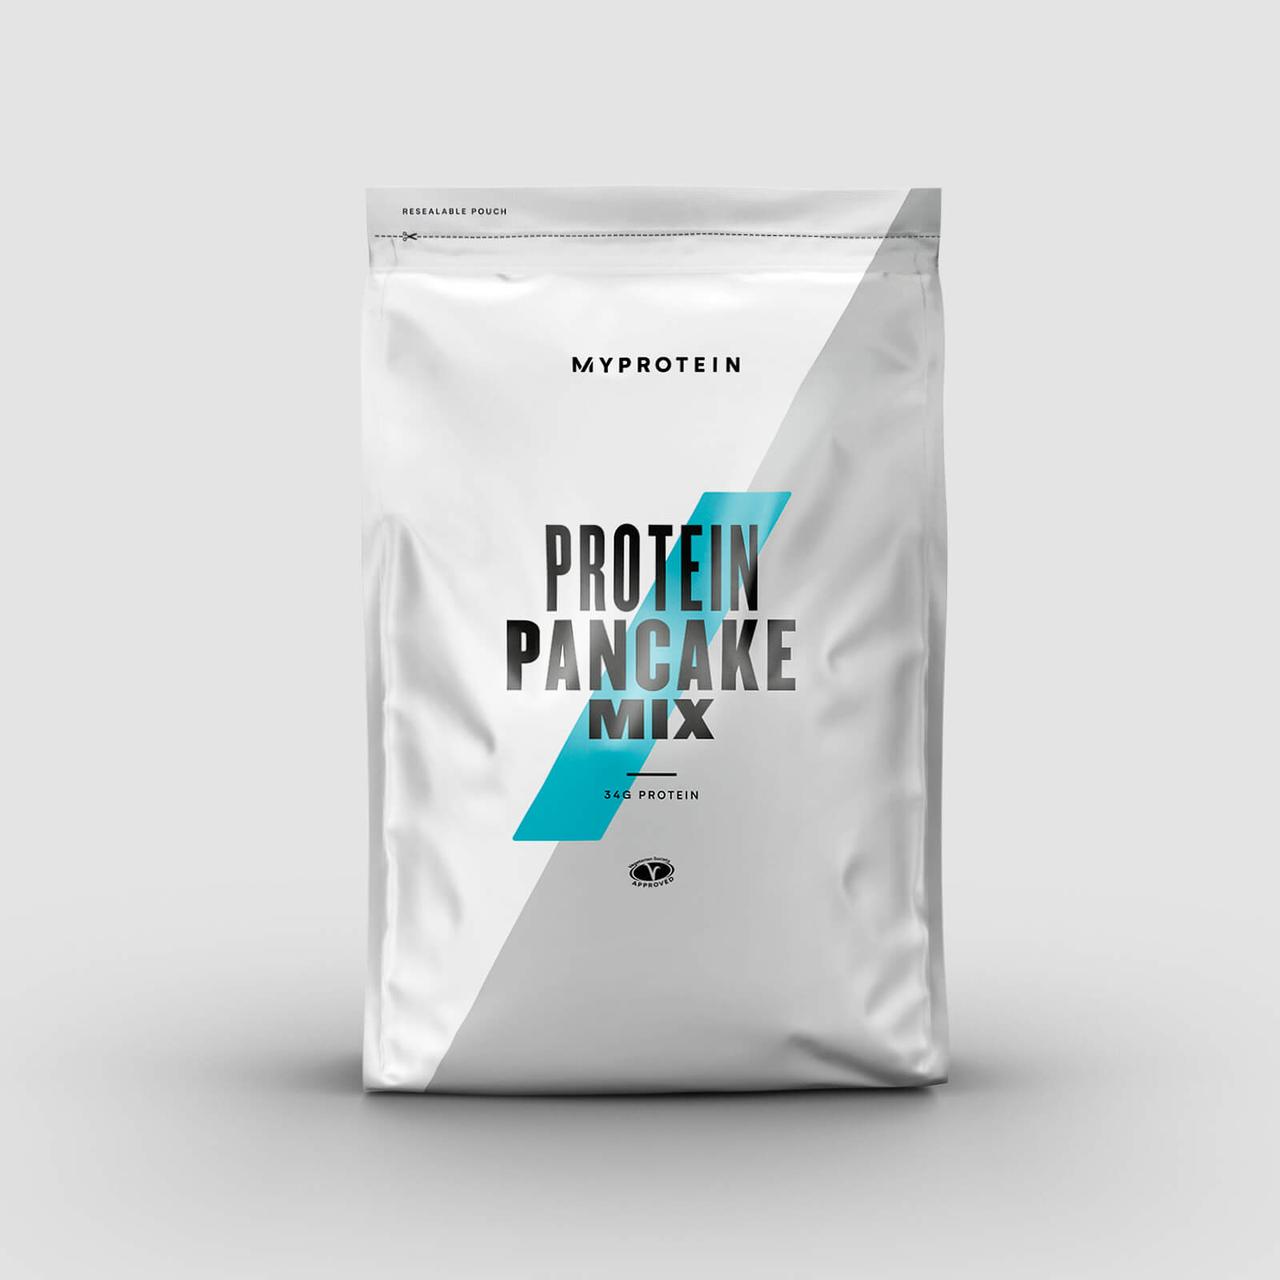 

Протеиновая смесь для панкейков Protein Pancake Mix Myprotein - 500 г Шоколад